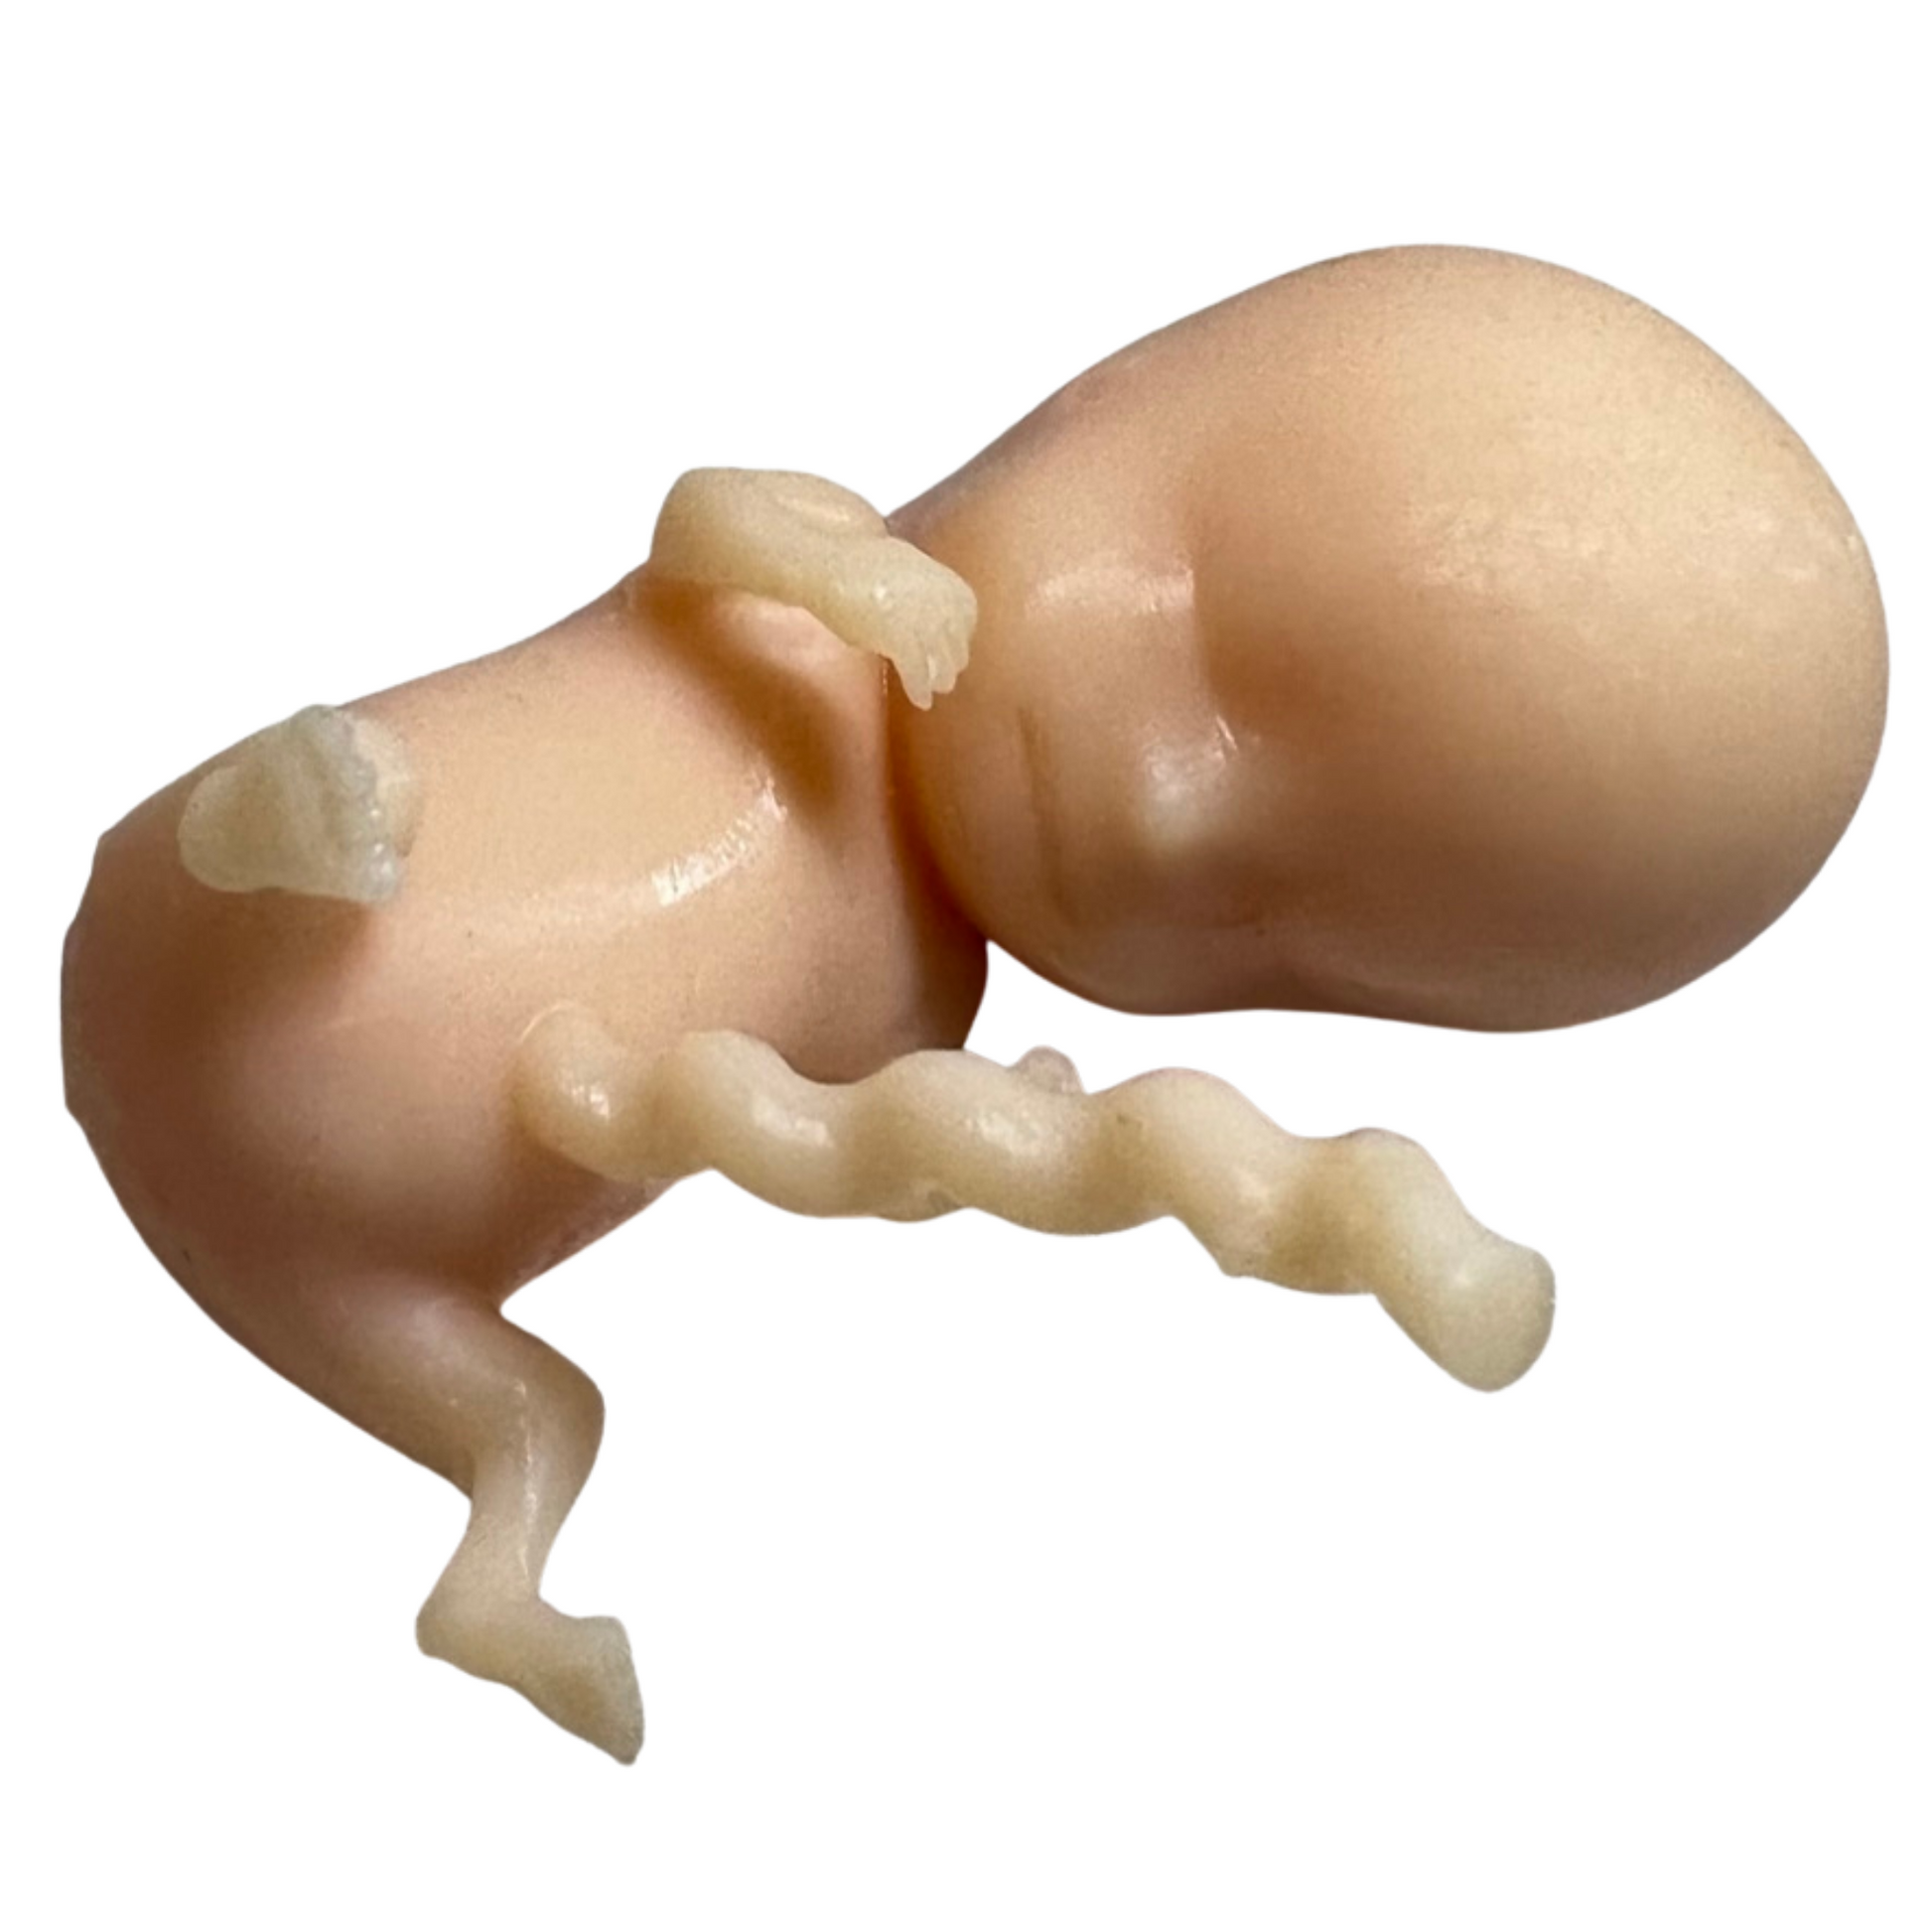 Image of a 3D printed 10-week fetus